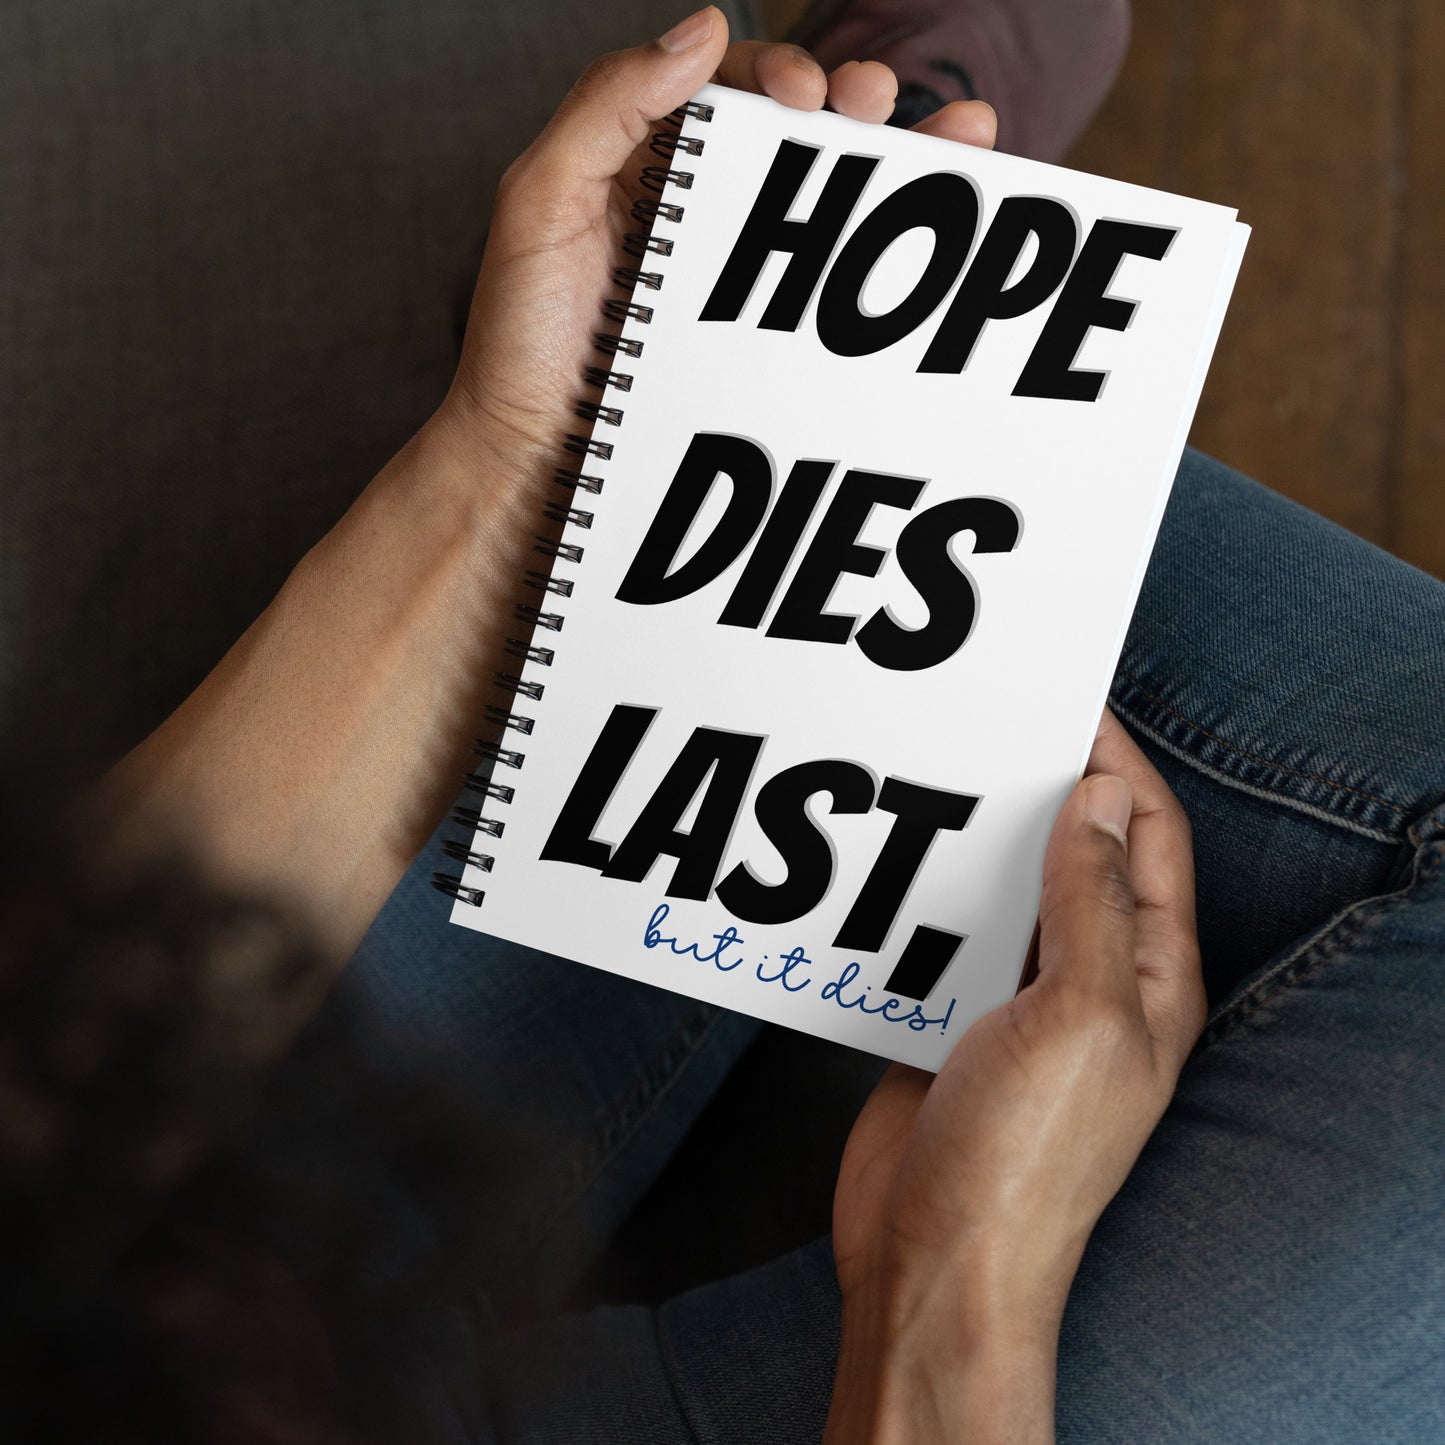 hope dies last, but it dies! Spiral notebook